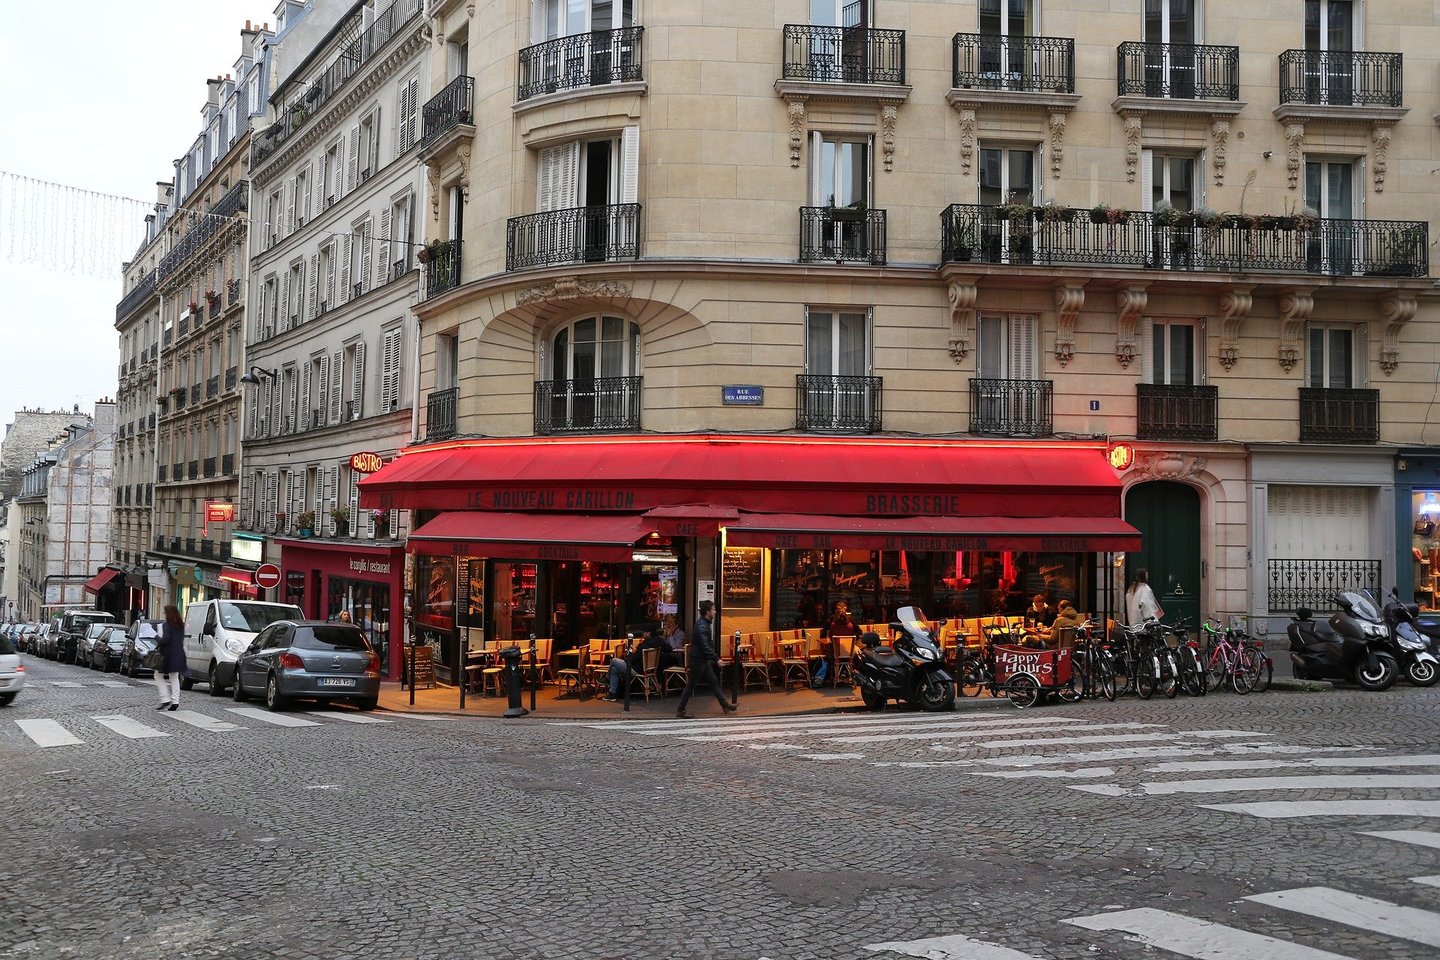 Paryžiaus gyventojai bus kviečiami pasisakyti, ar mieste reikėtų palikti elektrinių paspirtukų nuomos paslaugas, pranešė Prancūzijos sostinės merė.<br>Pixabay.com nuotr.